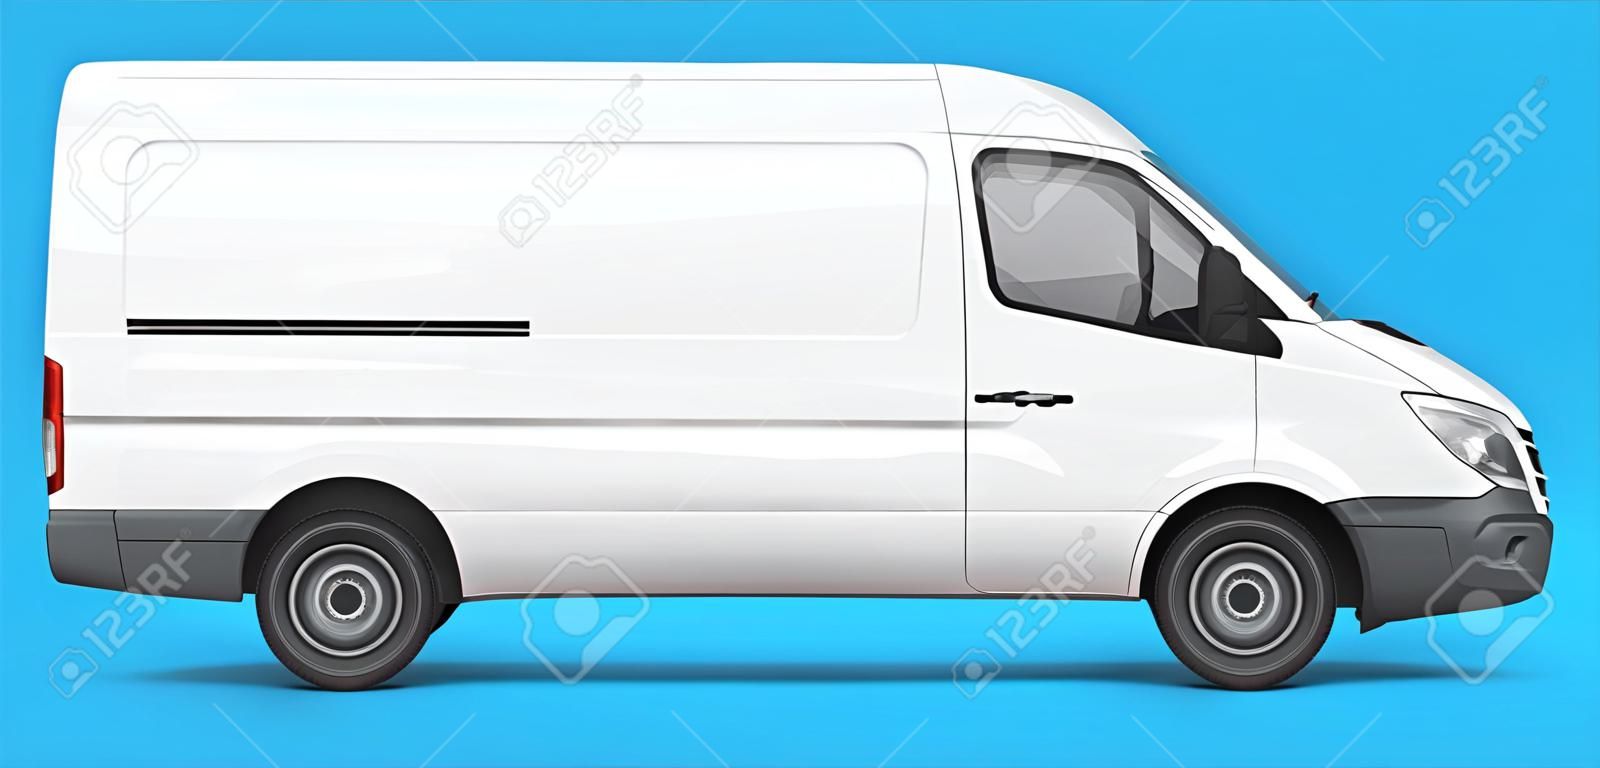 Une simple camionnette blanche pour la logistique. Illustration vectorielle de branding et d'identité.